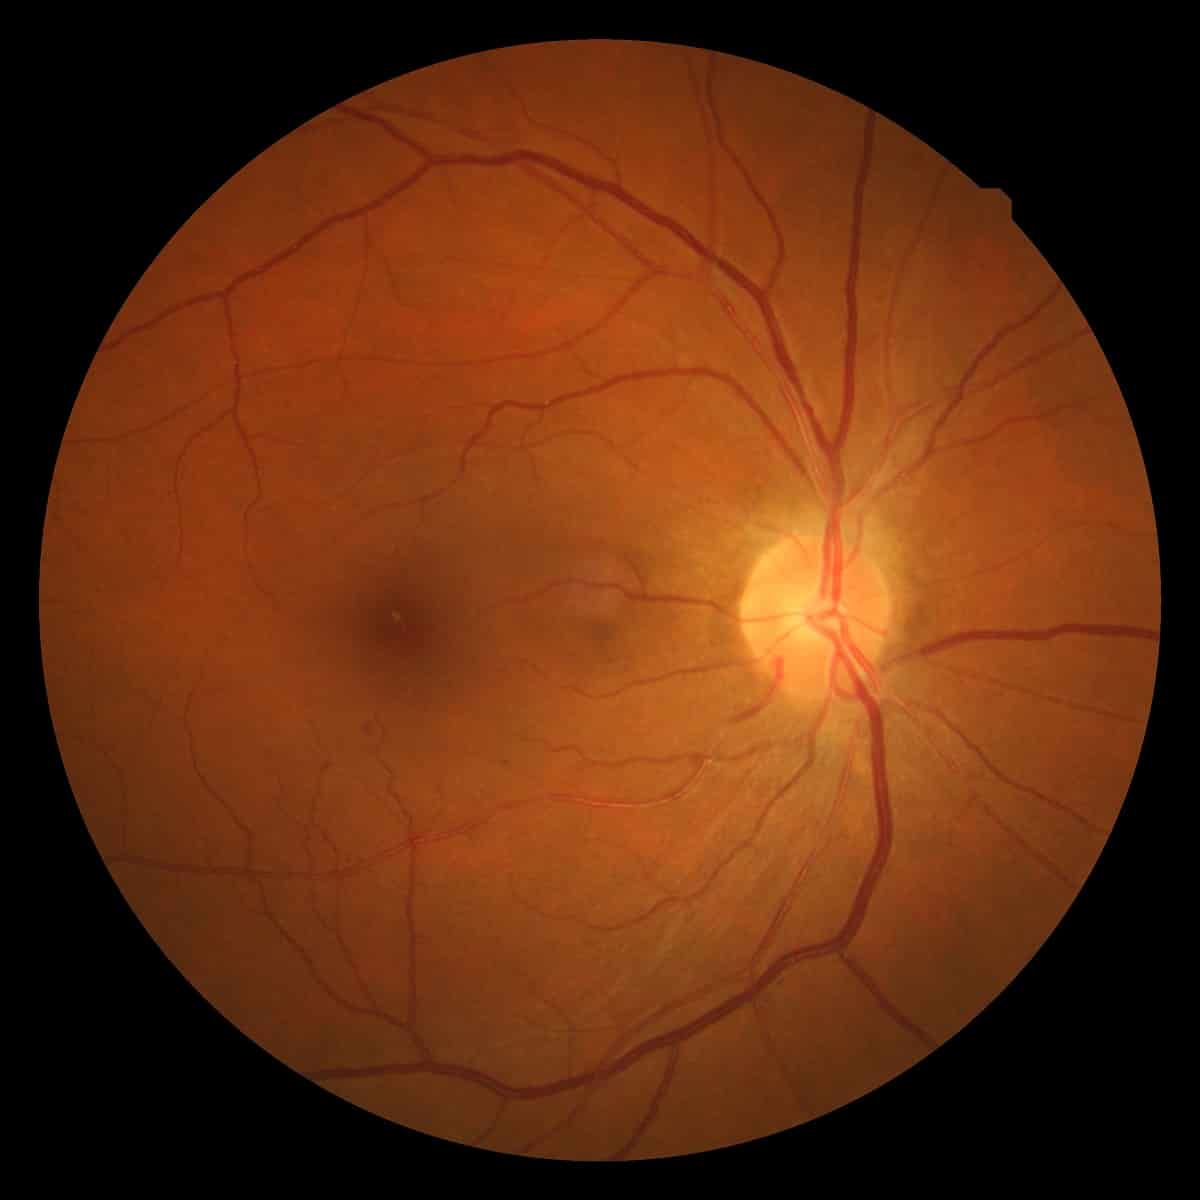 La presión arterial alta puede afectar la retina y llegar a producir ceguera